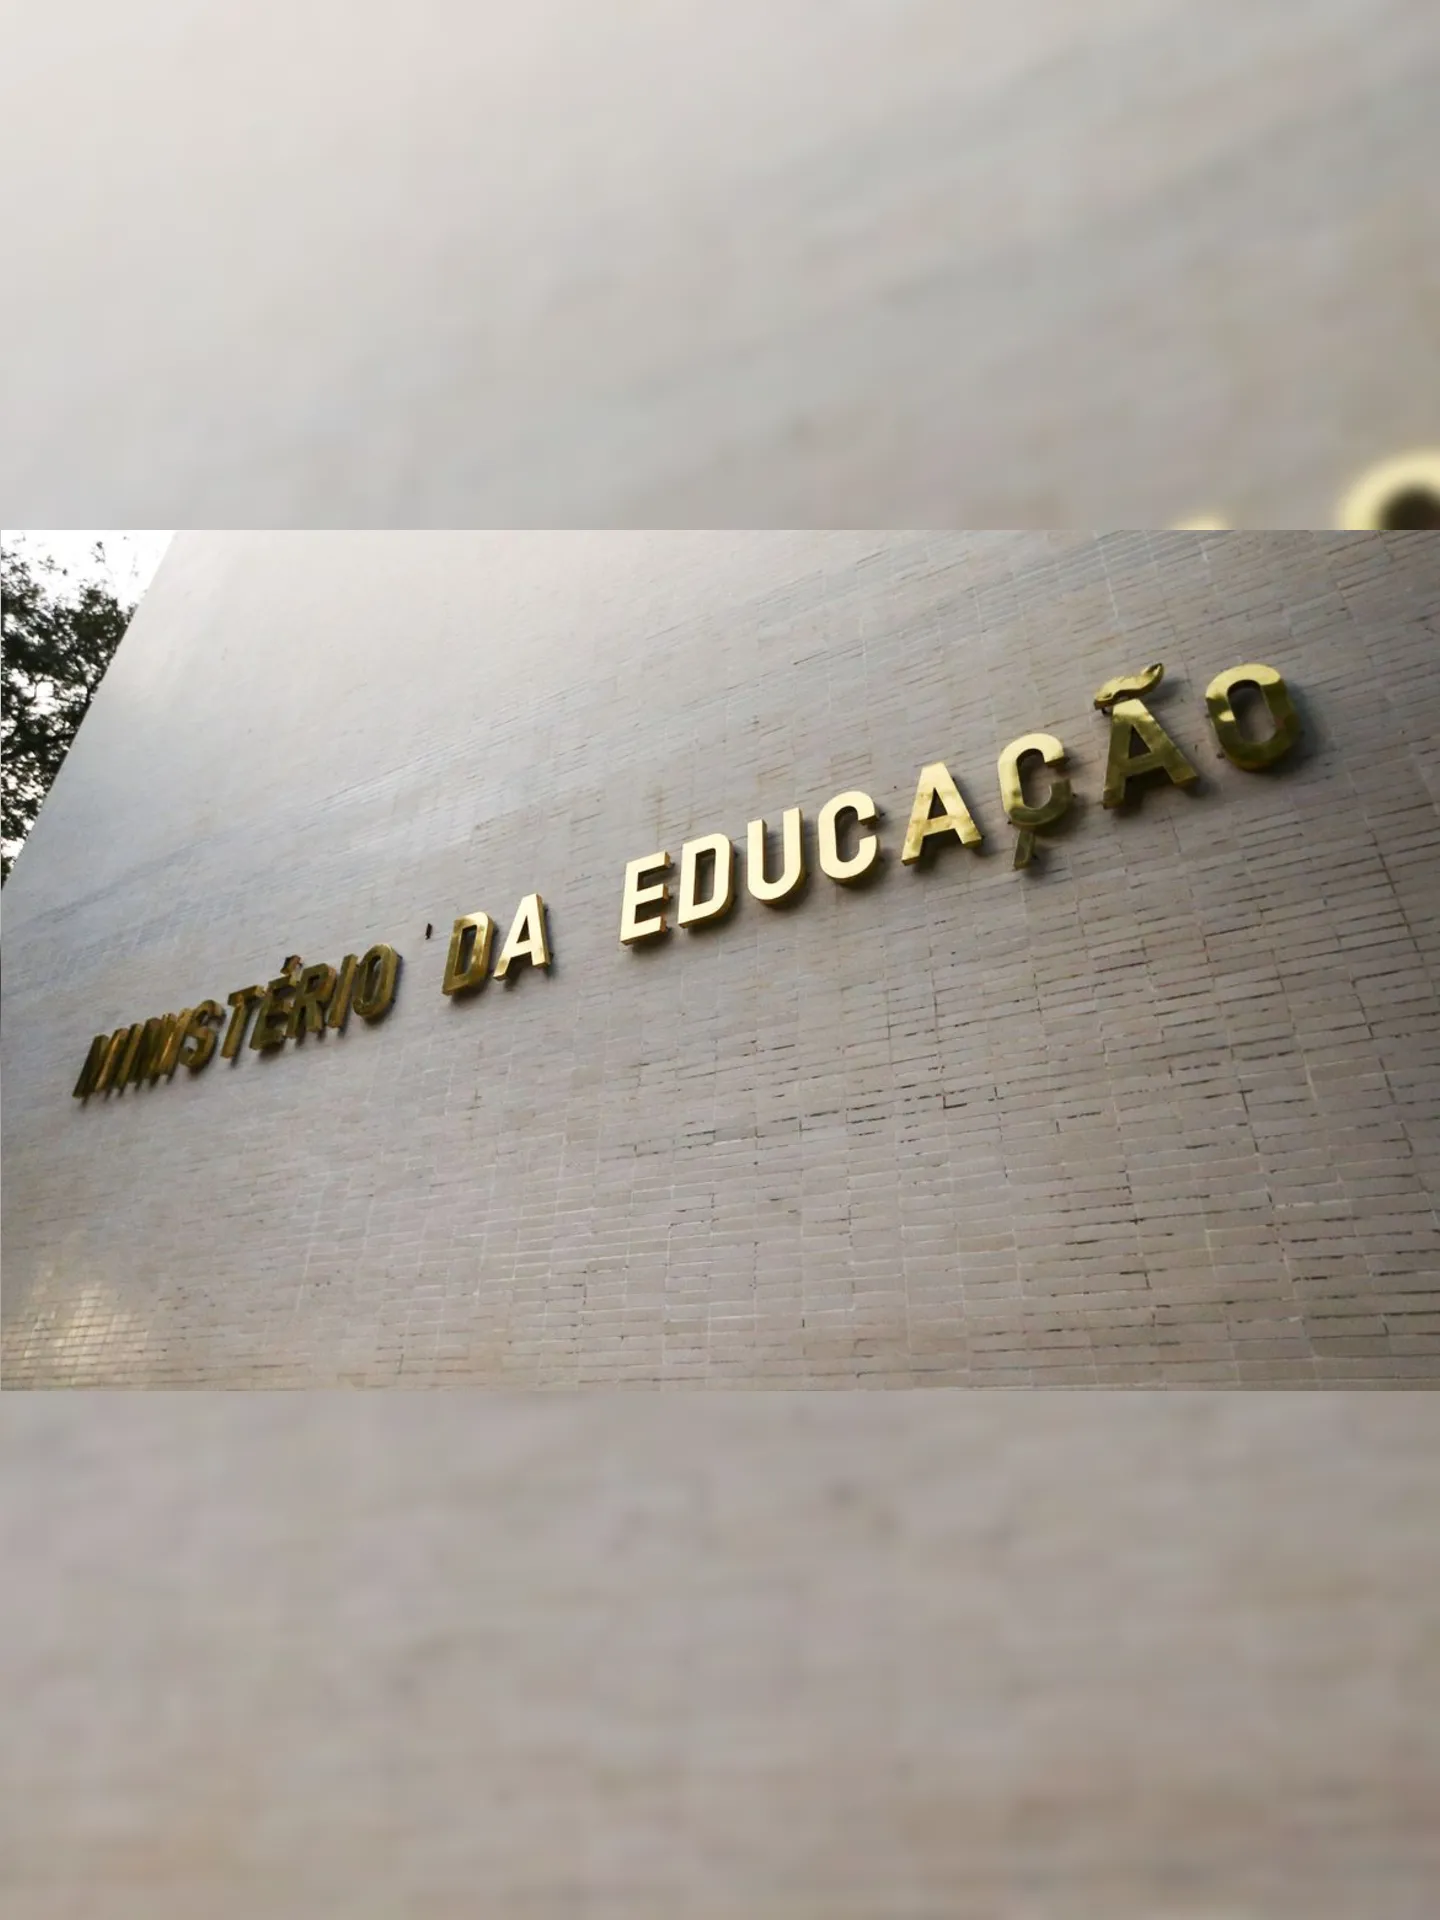 Entidades apontam corte de R$ 1,68 bilhão na Educação